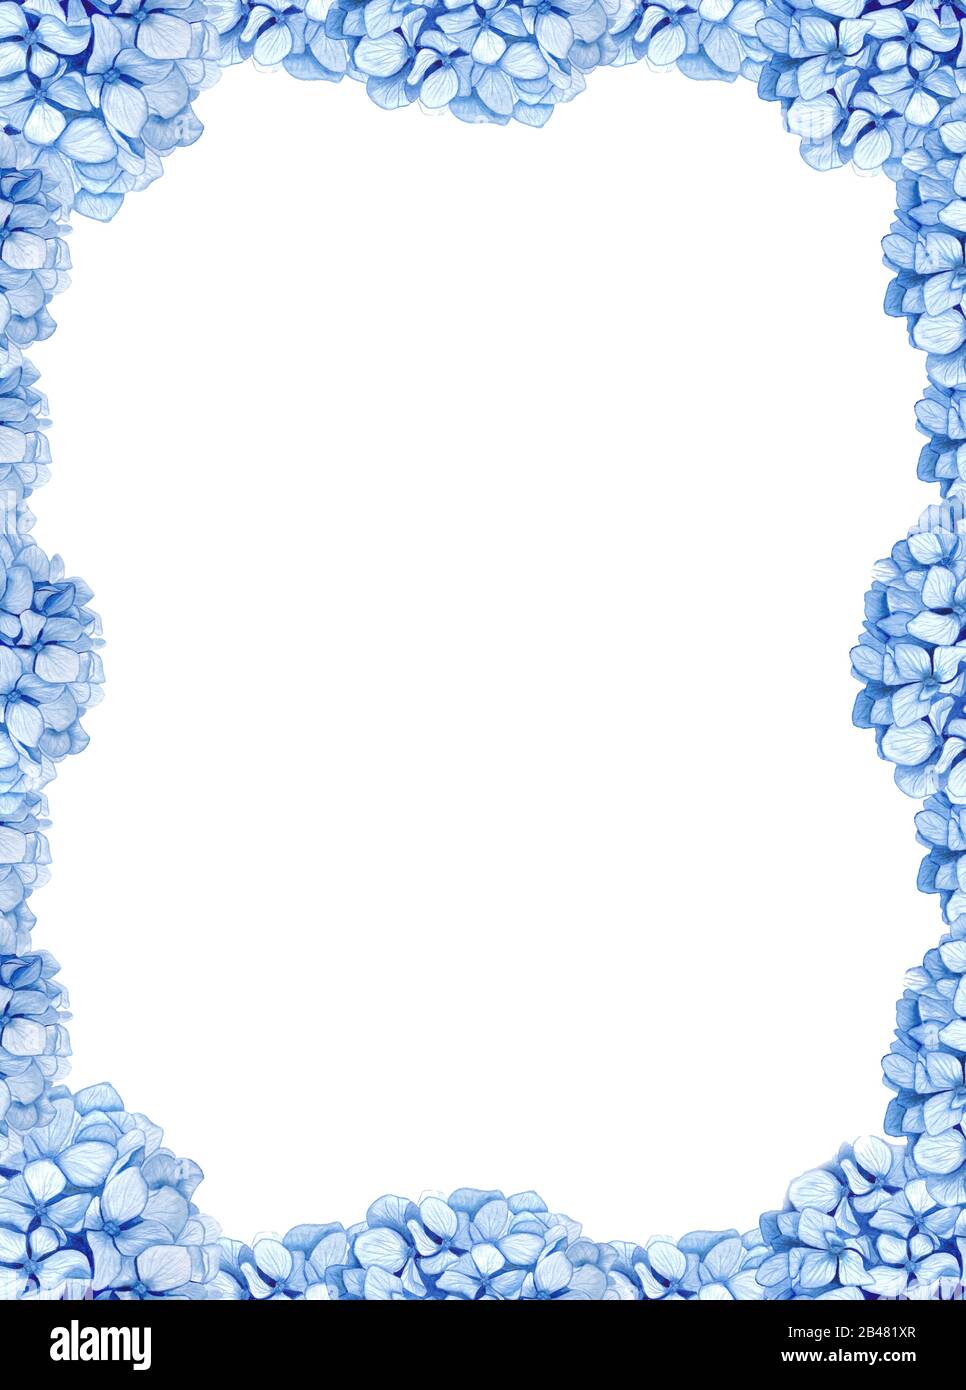 Cadre d'hortensias bleu doux sur fond blanc Banque D'Images